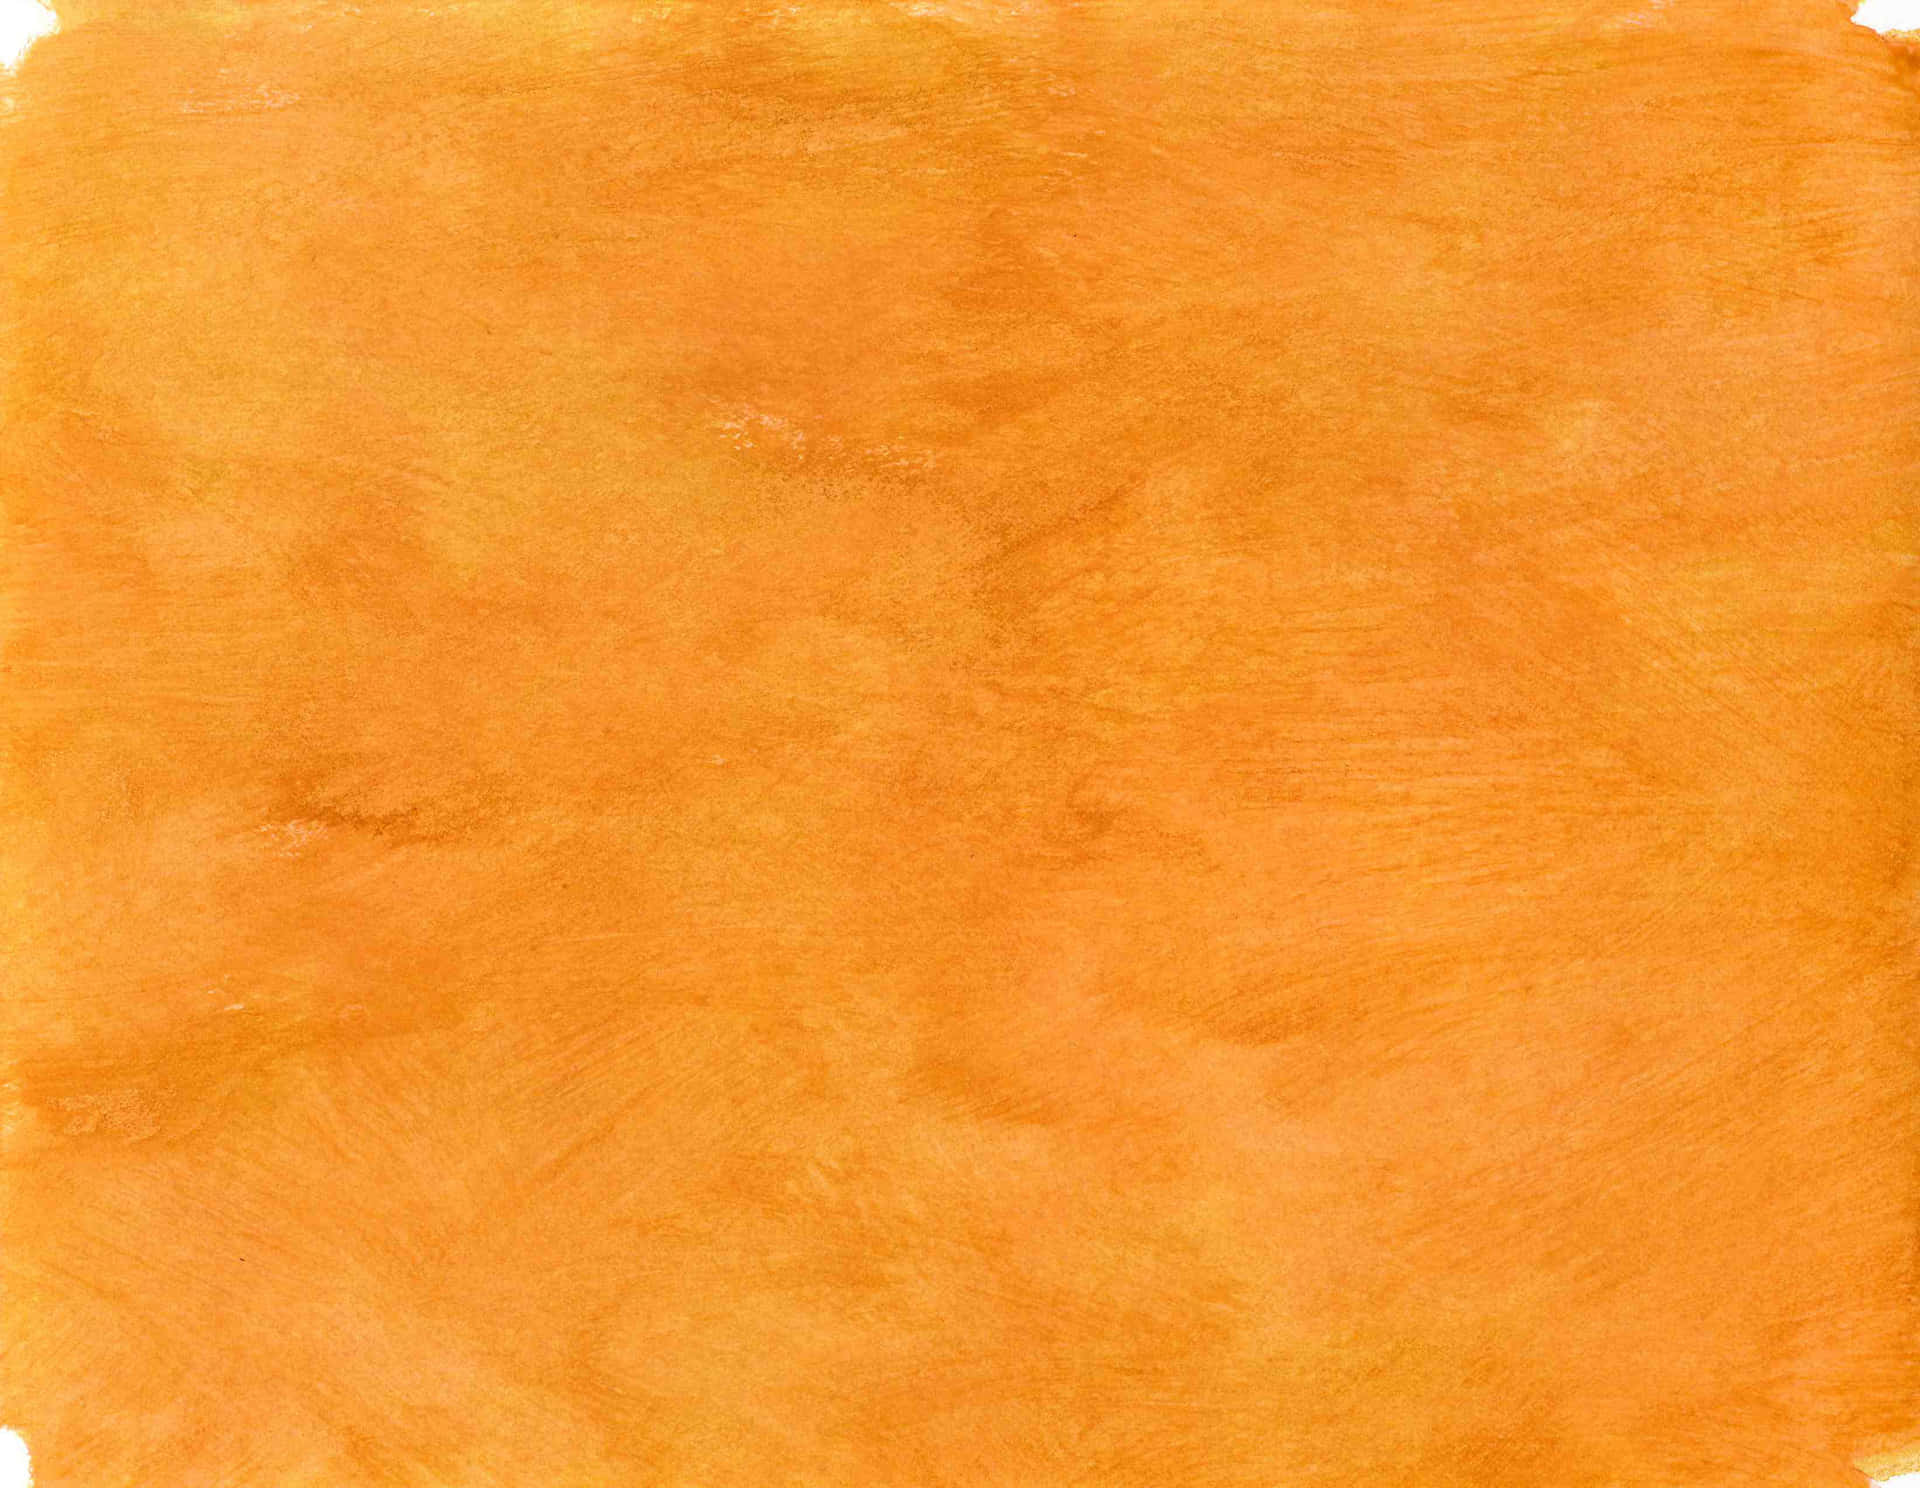 Lebhaftesgebranntes Orangen-hintergrundbild